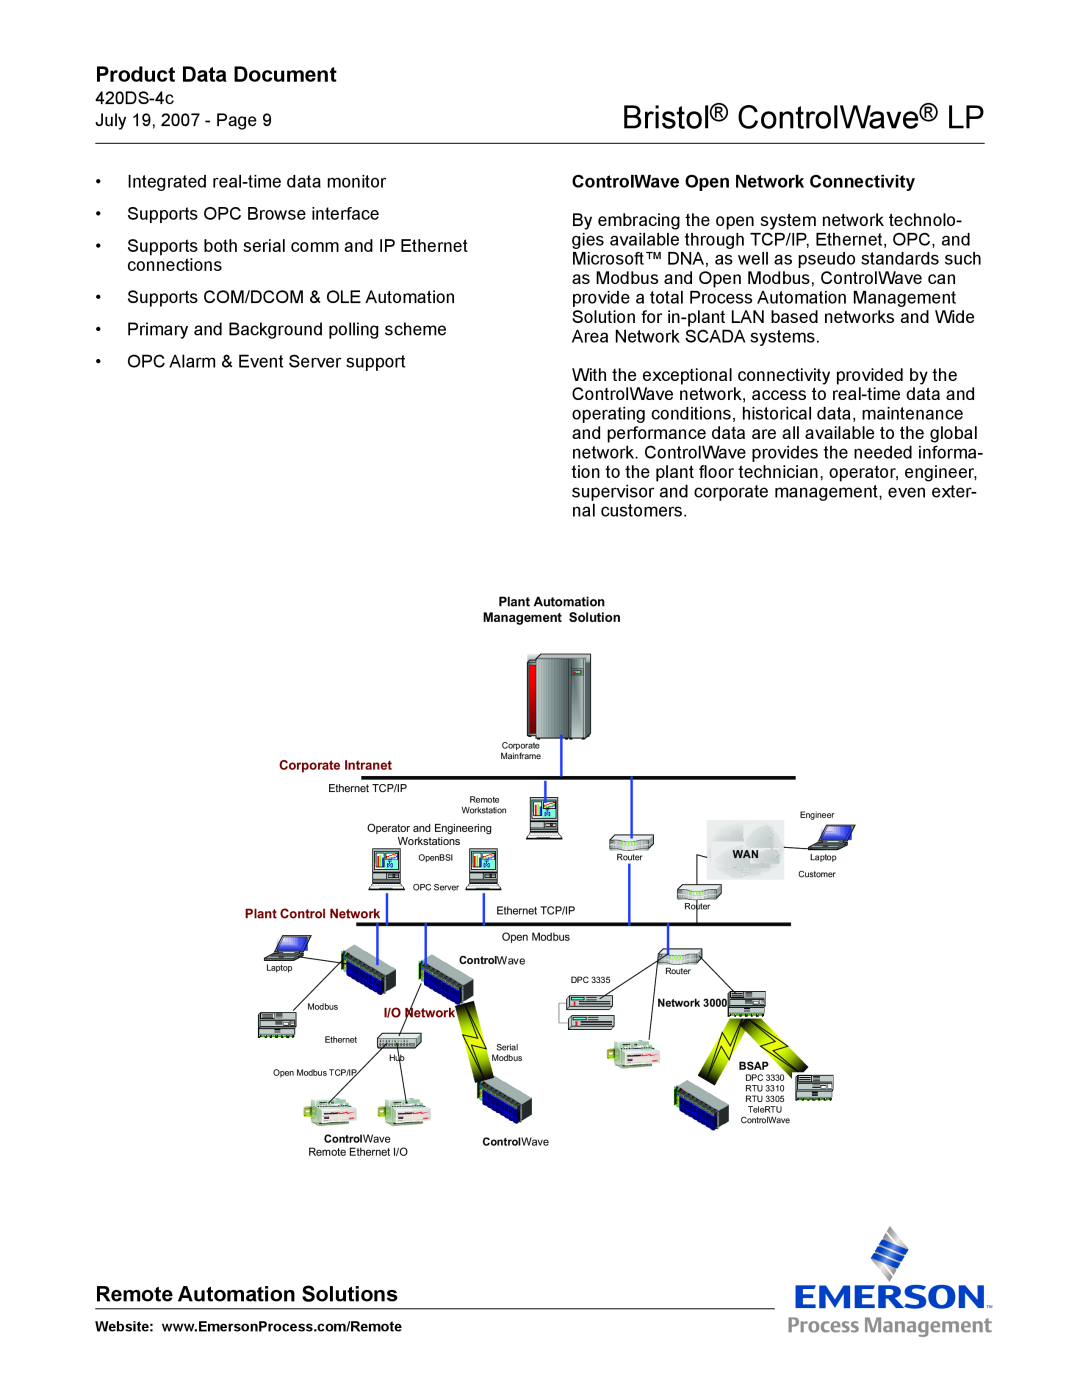 Emerson Process Management manual ControlWave Open Network Connectivity, Bristol ControlWave LP, Product Data Document 